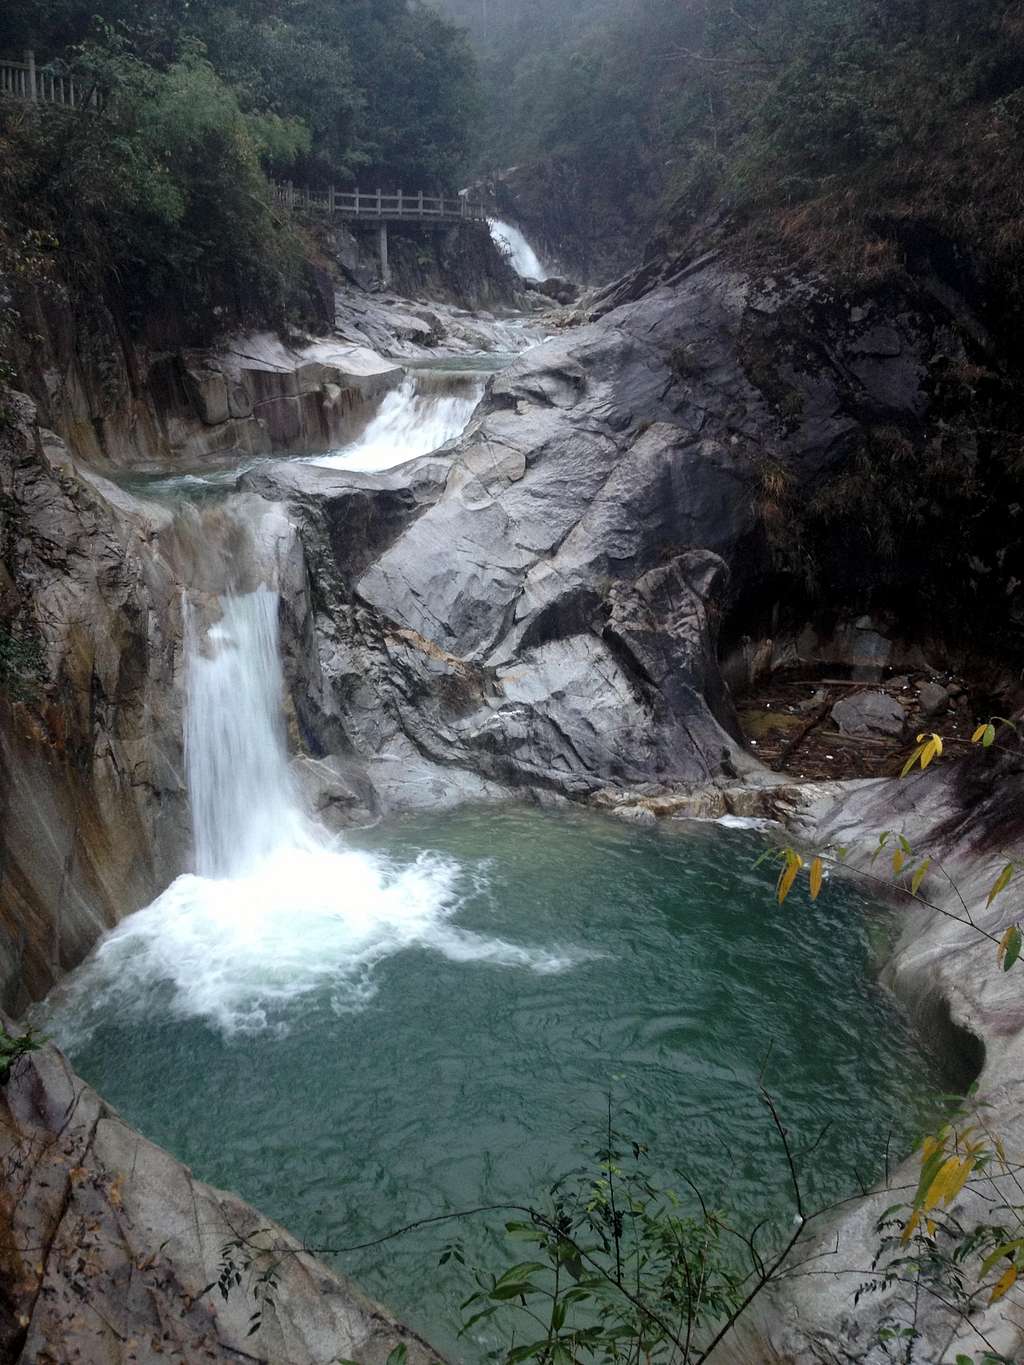 Waterfall in Qinshui Valley